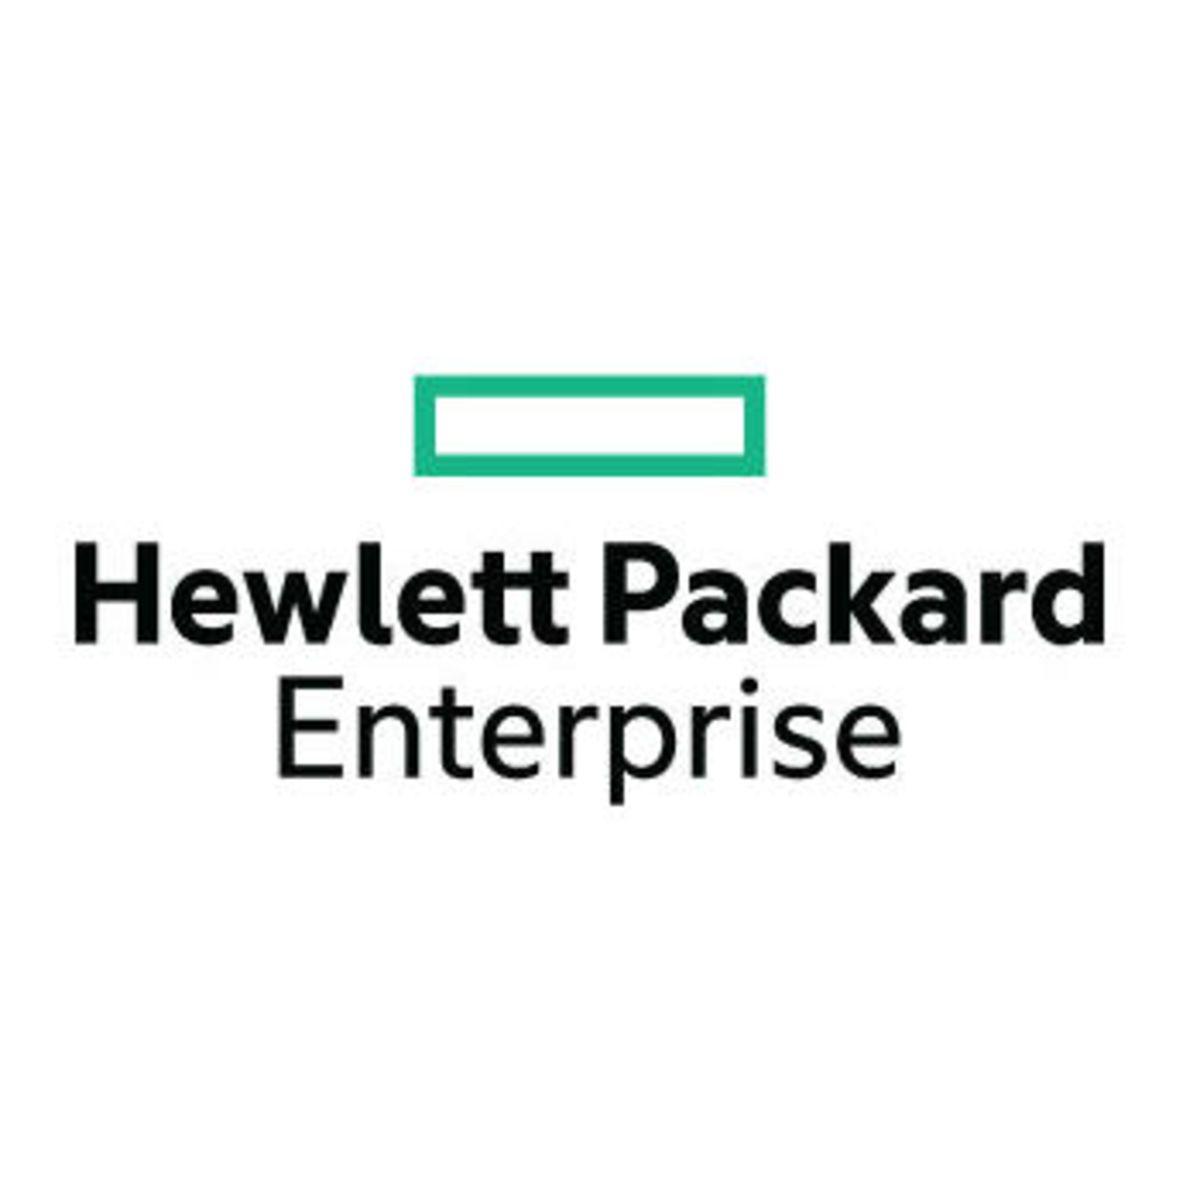 Hewlett-Packard Enterprise Logo - Hewlett Packard Enterprise Logo